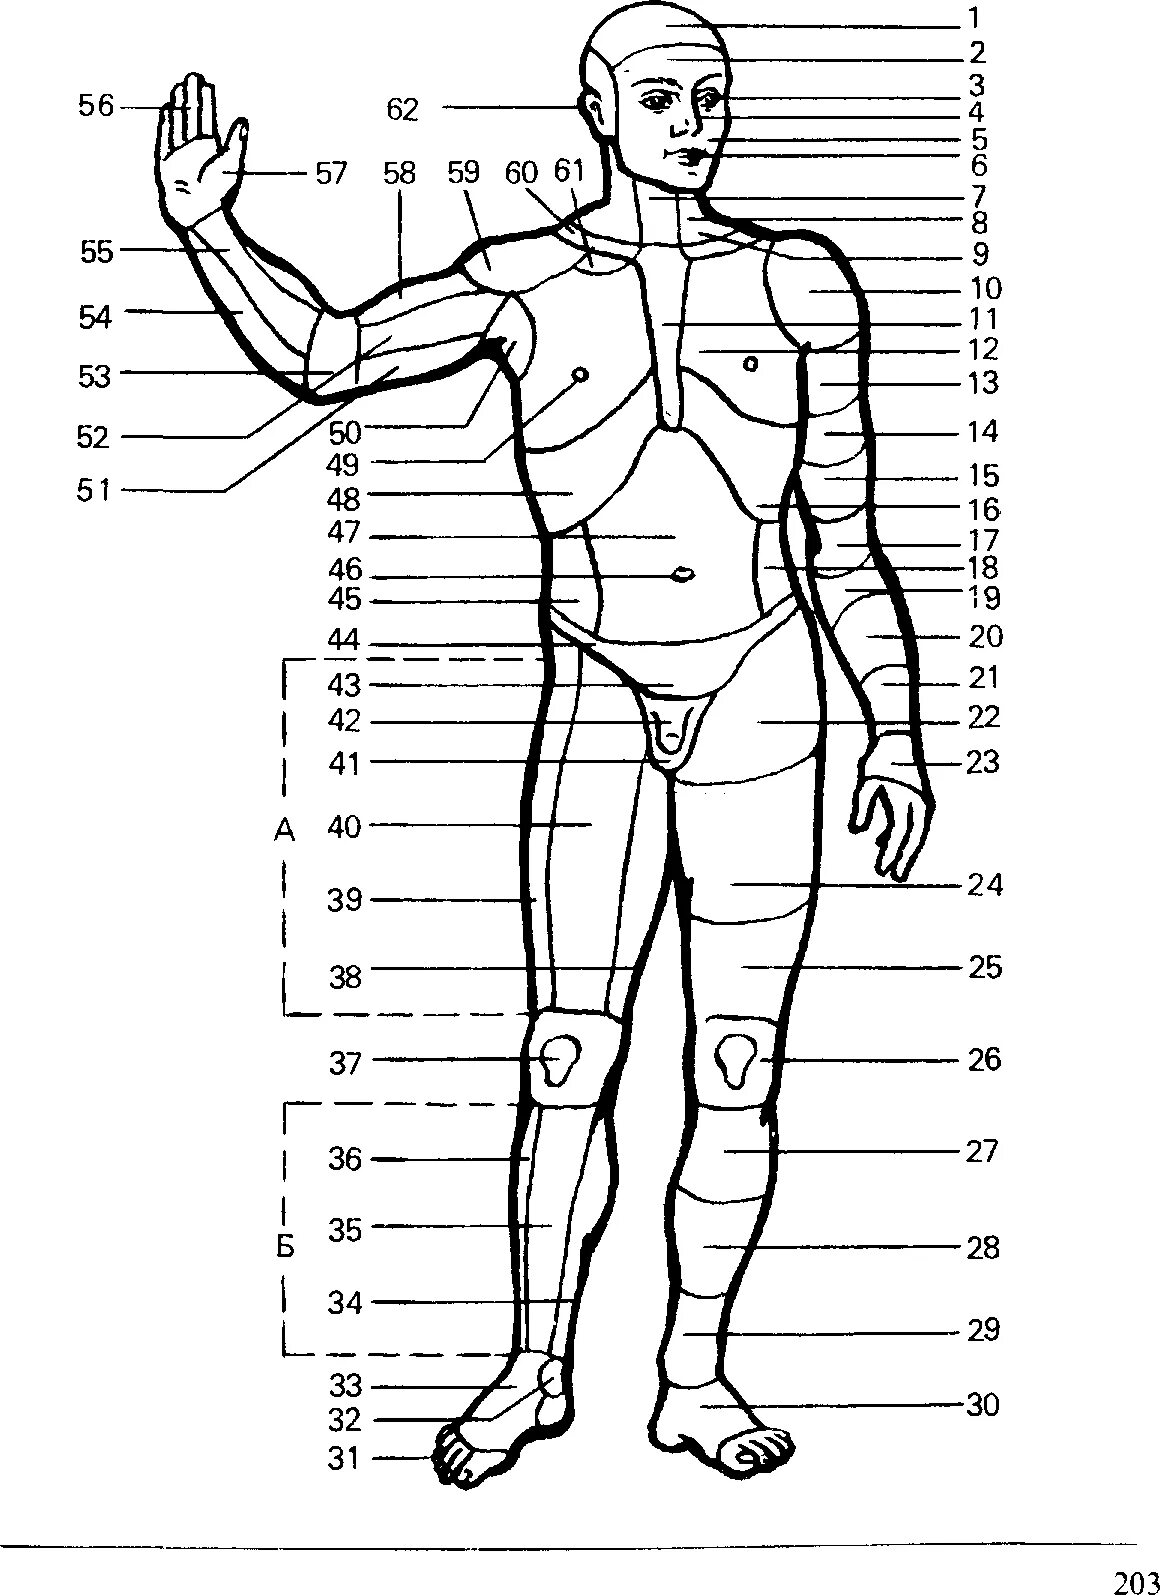 Название частей человека. Наименование частей тела человека криминалистика. Анатомические области тела человека схема. Назовите части тела человека криминалистика. Название частей ттнла человкк.